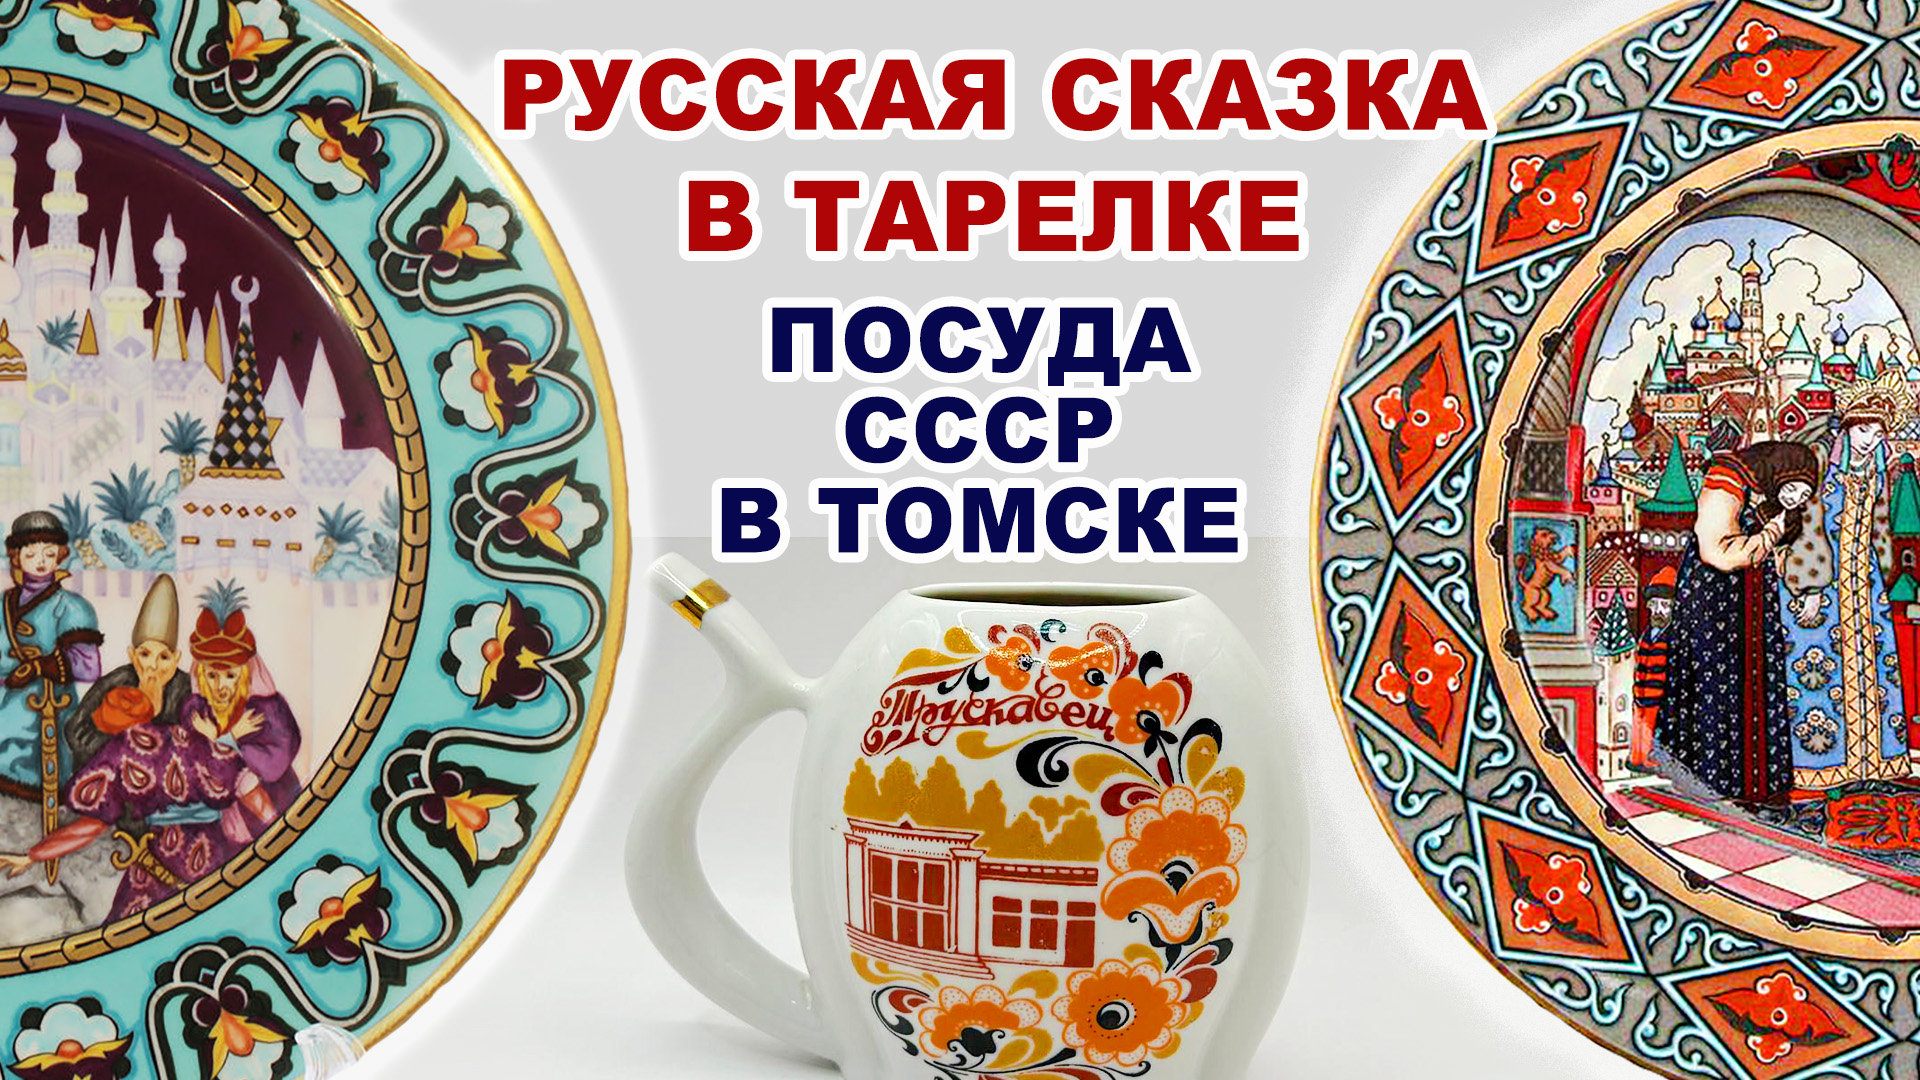 ТАКОГО Я ЕЩЁ НЕ ВИДЕЛА =комиссионка= Невероятно красивый советский фарфор в музее. Посуда СССР.